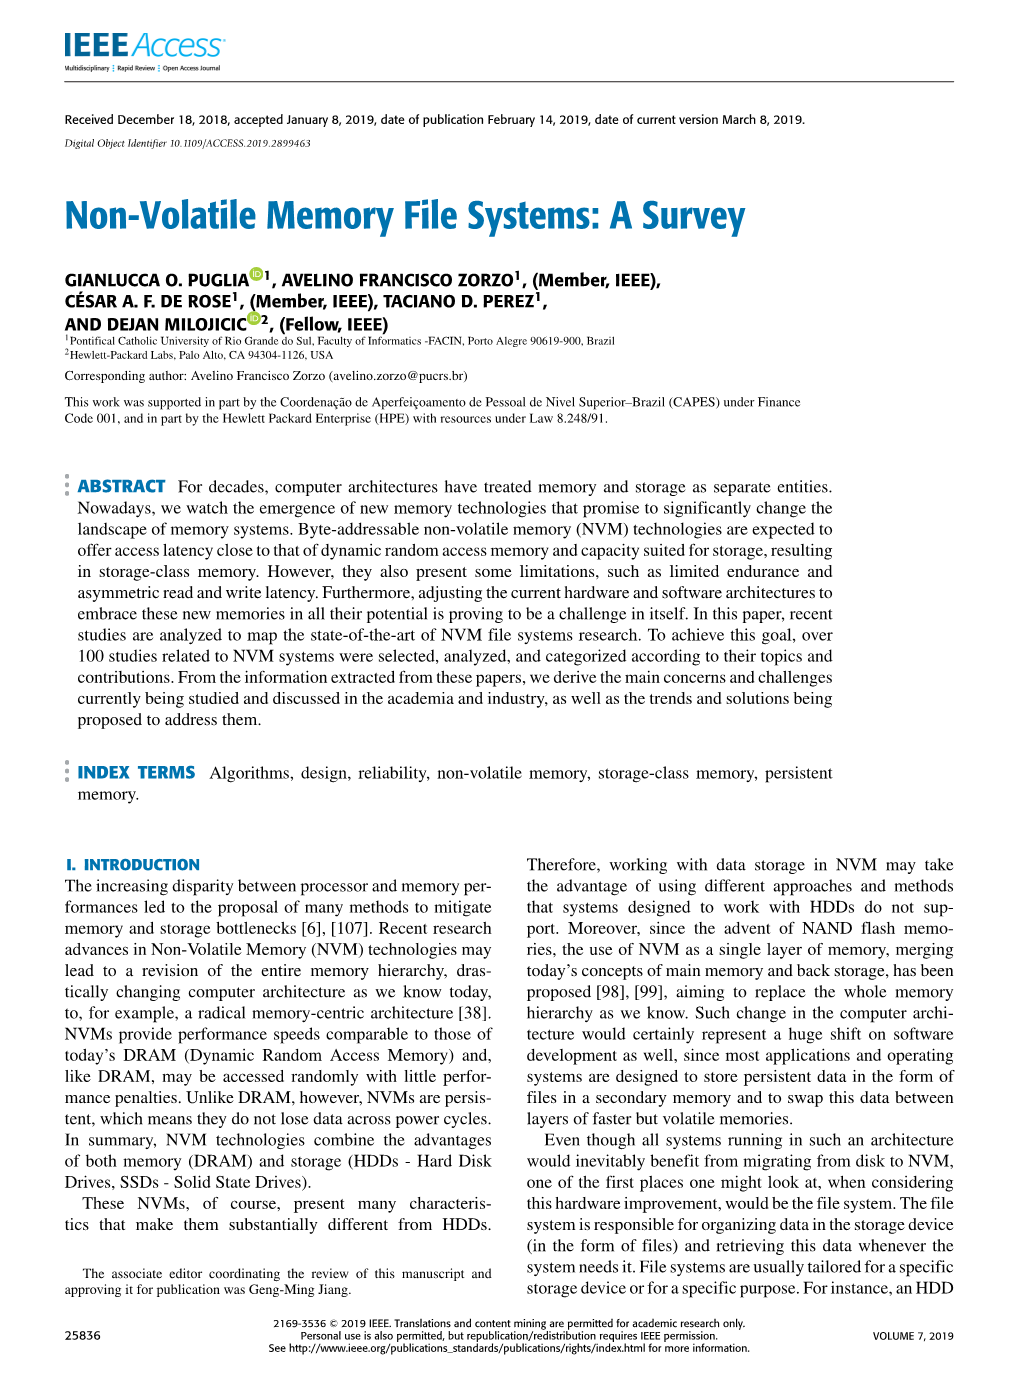 Non-Volatile Memory File Systems: a Survey